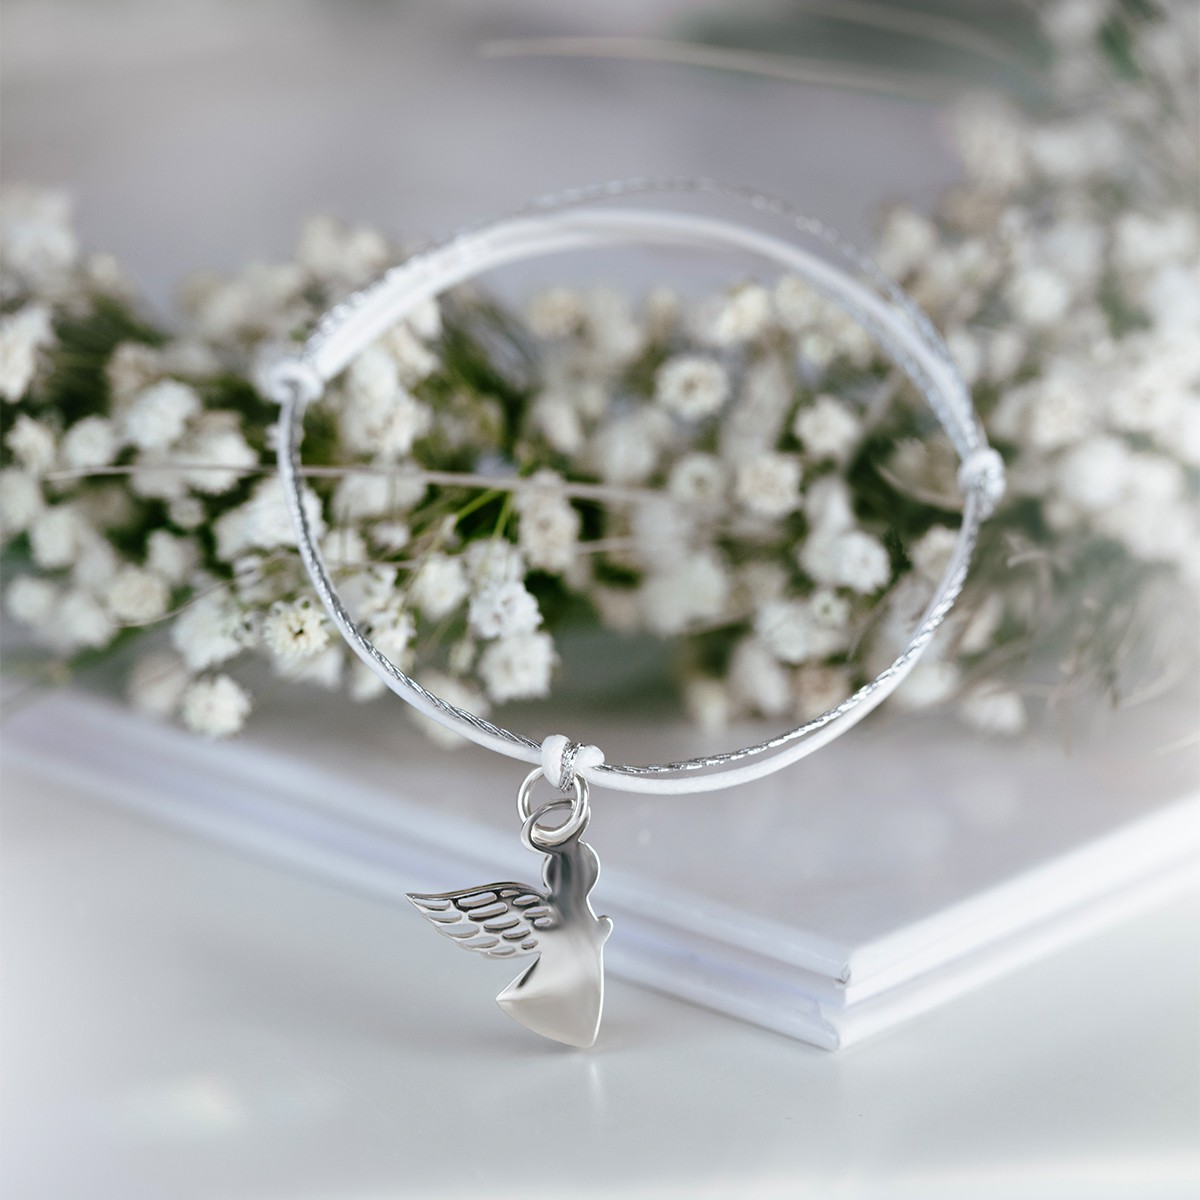 Armband mit Engel am weißen und silberenm Schnurband